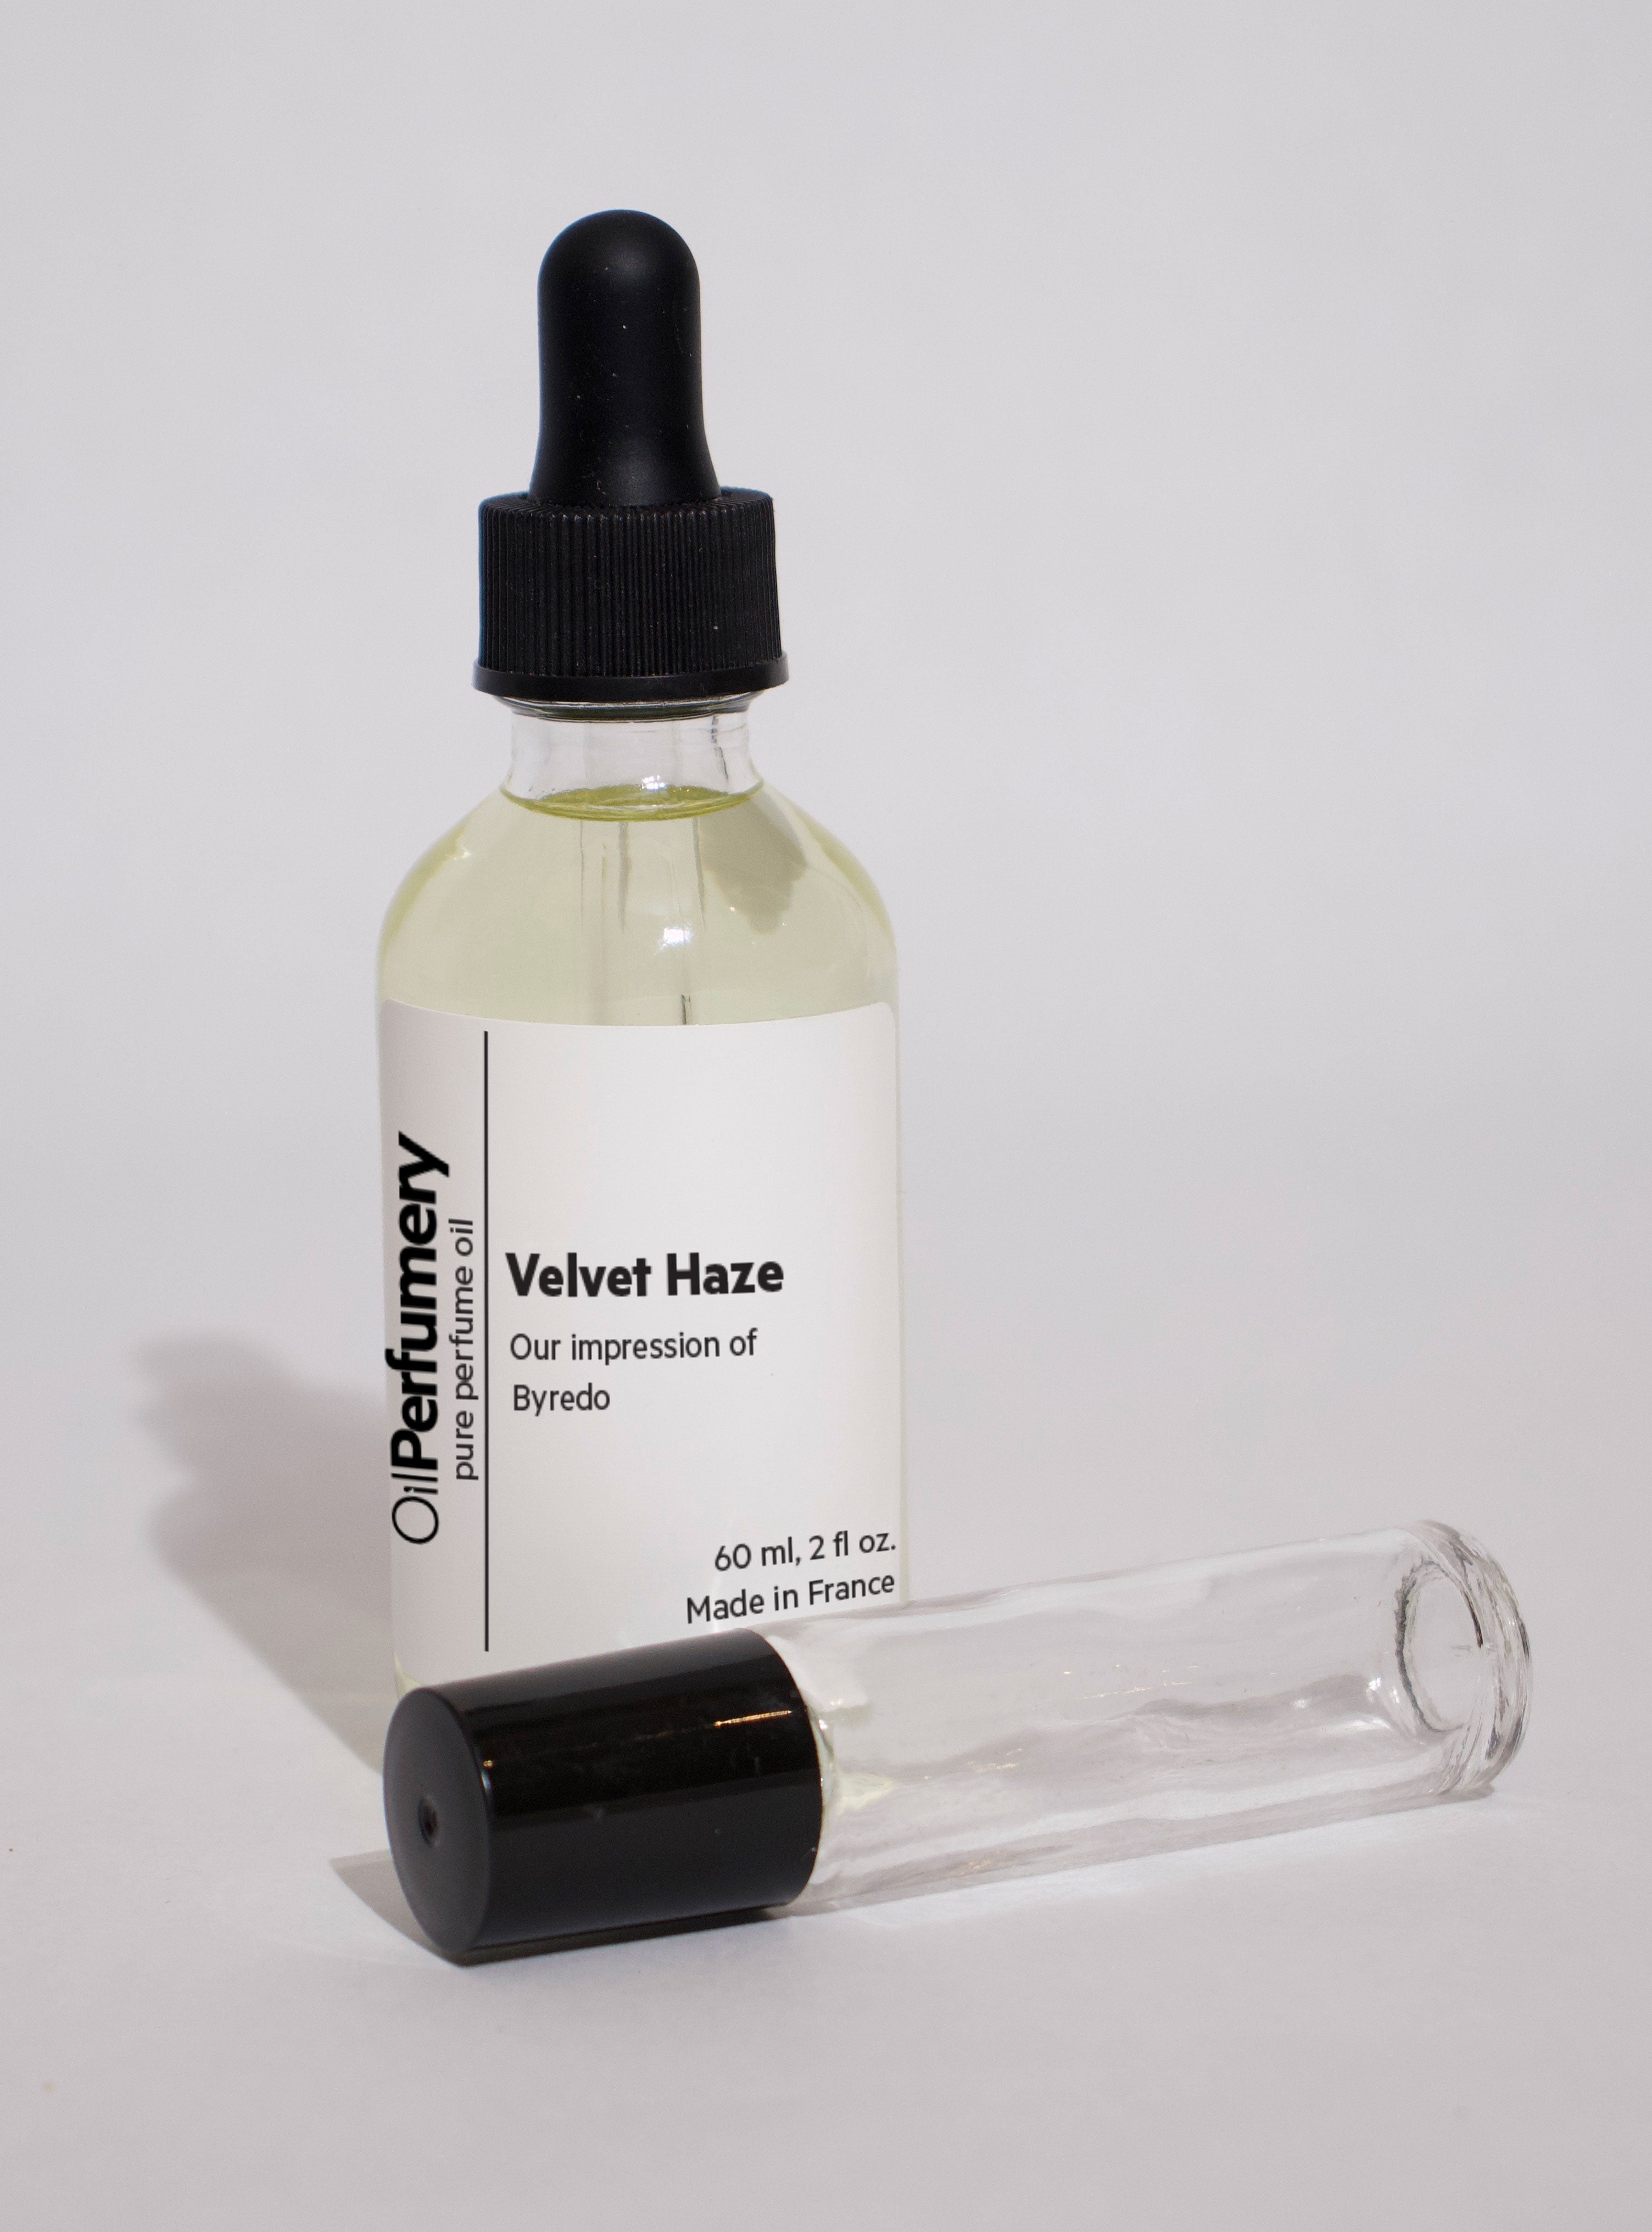 Oil Perfumery impression of Byredo - Velvet Haze